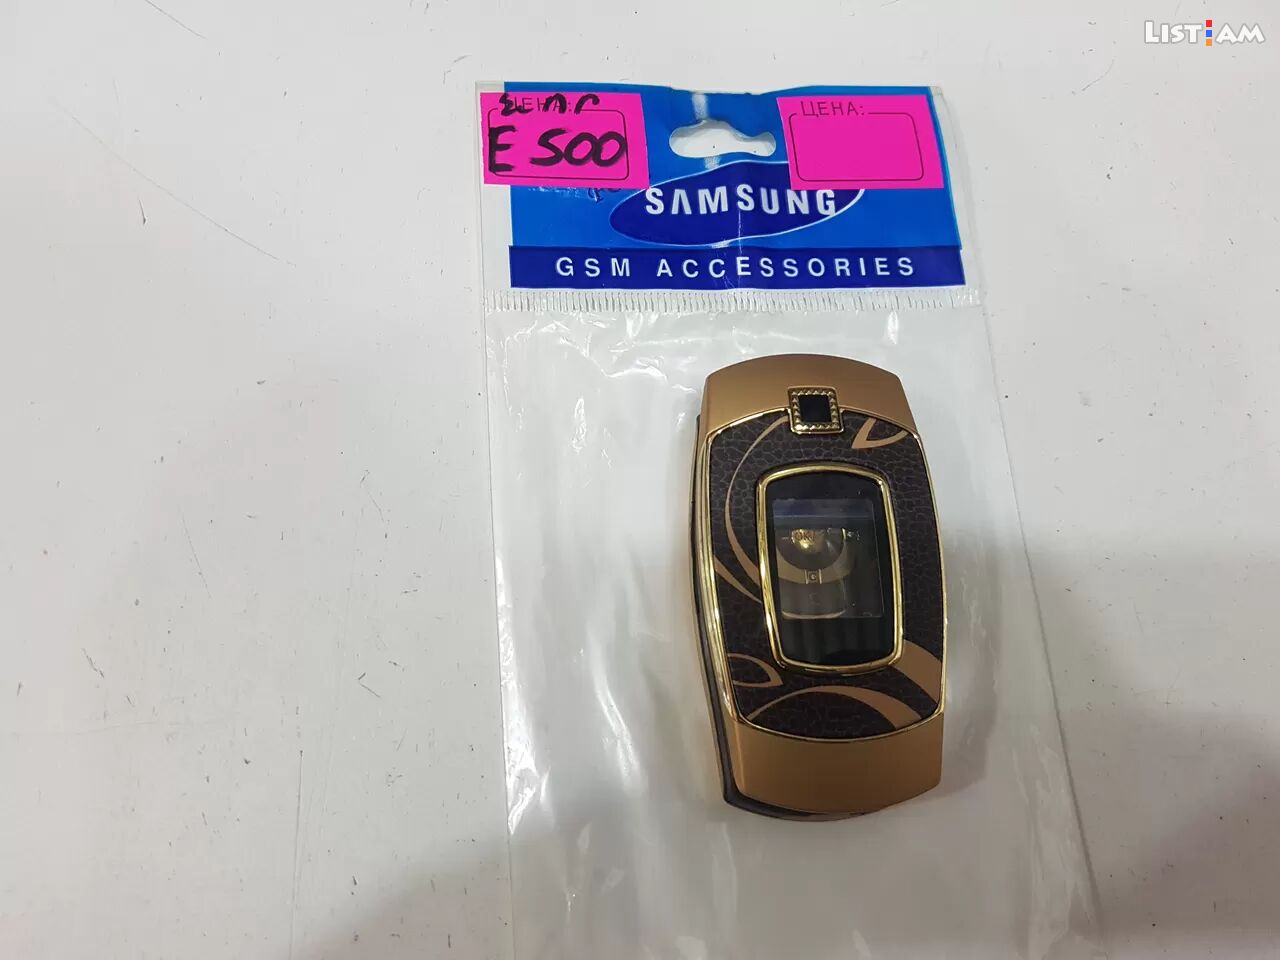 Samsung e500